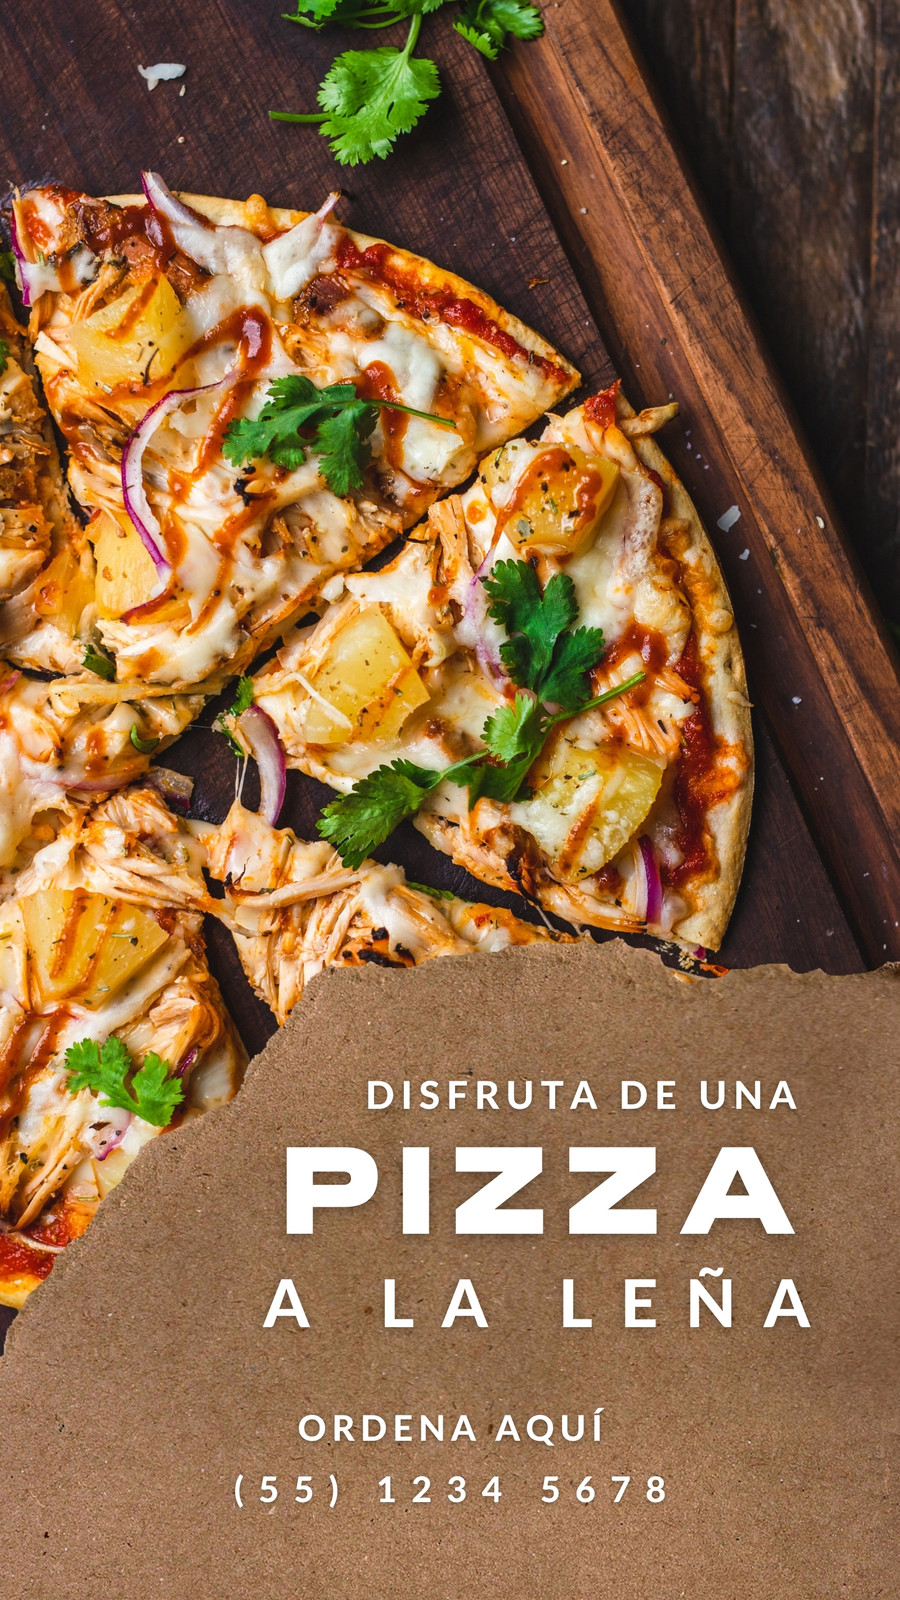 Plantillas pizza - Gratis y editables - Canva